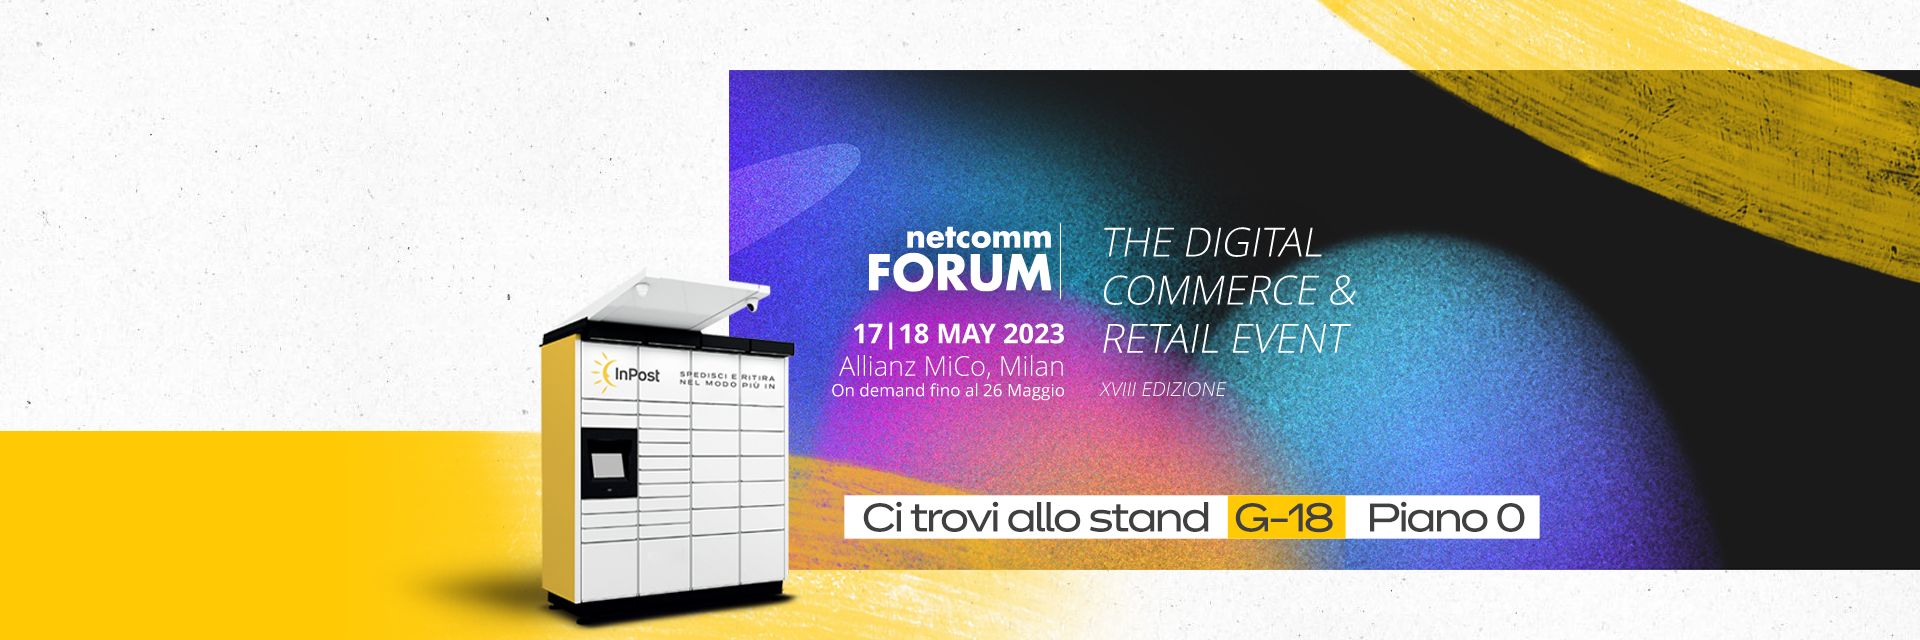 InPost al piu grande evento italiano dedicato all Ecommerce e alla Digital Transformation: Netcomm 2023